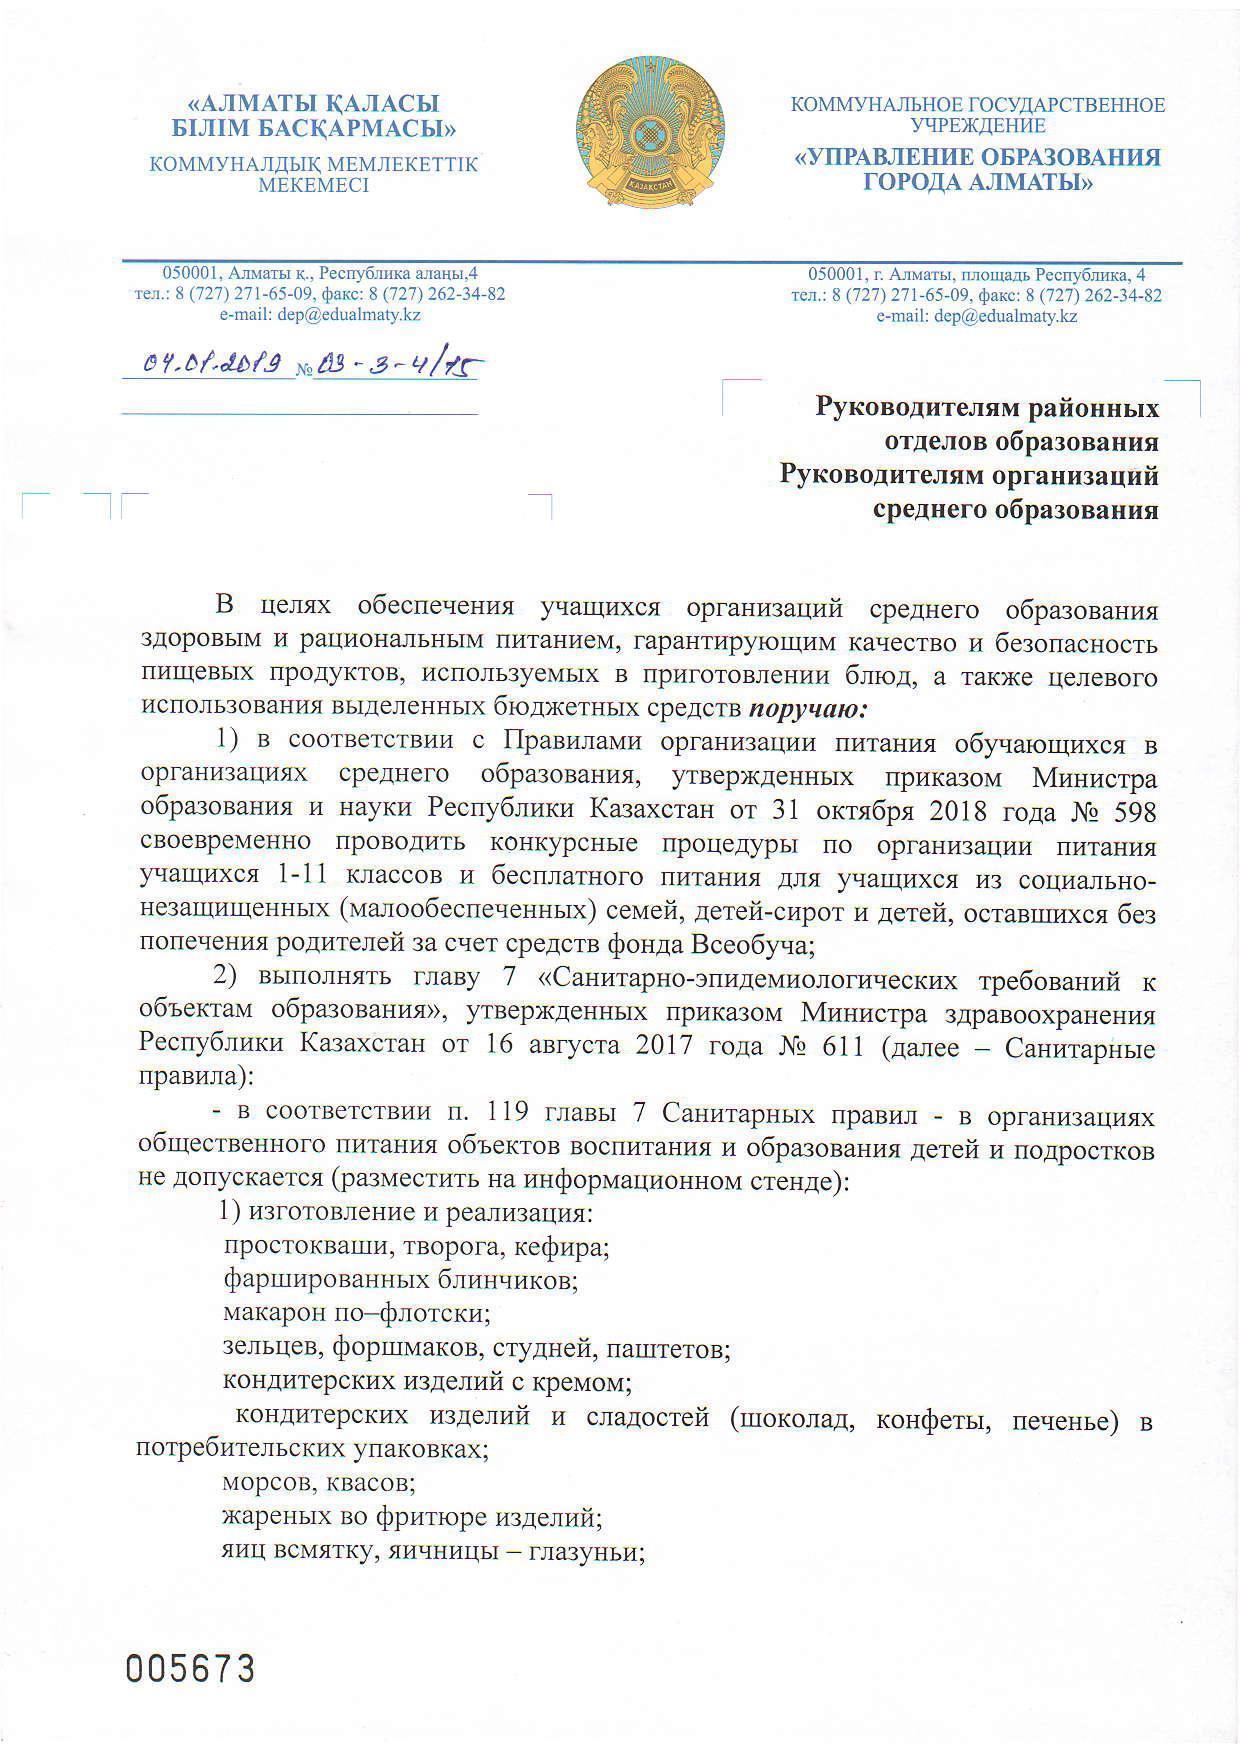 Письмо с Управления образования города Алматы